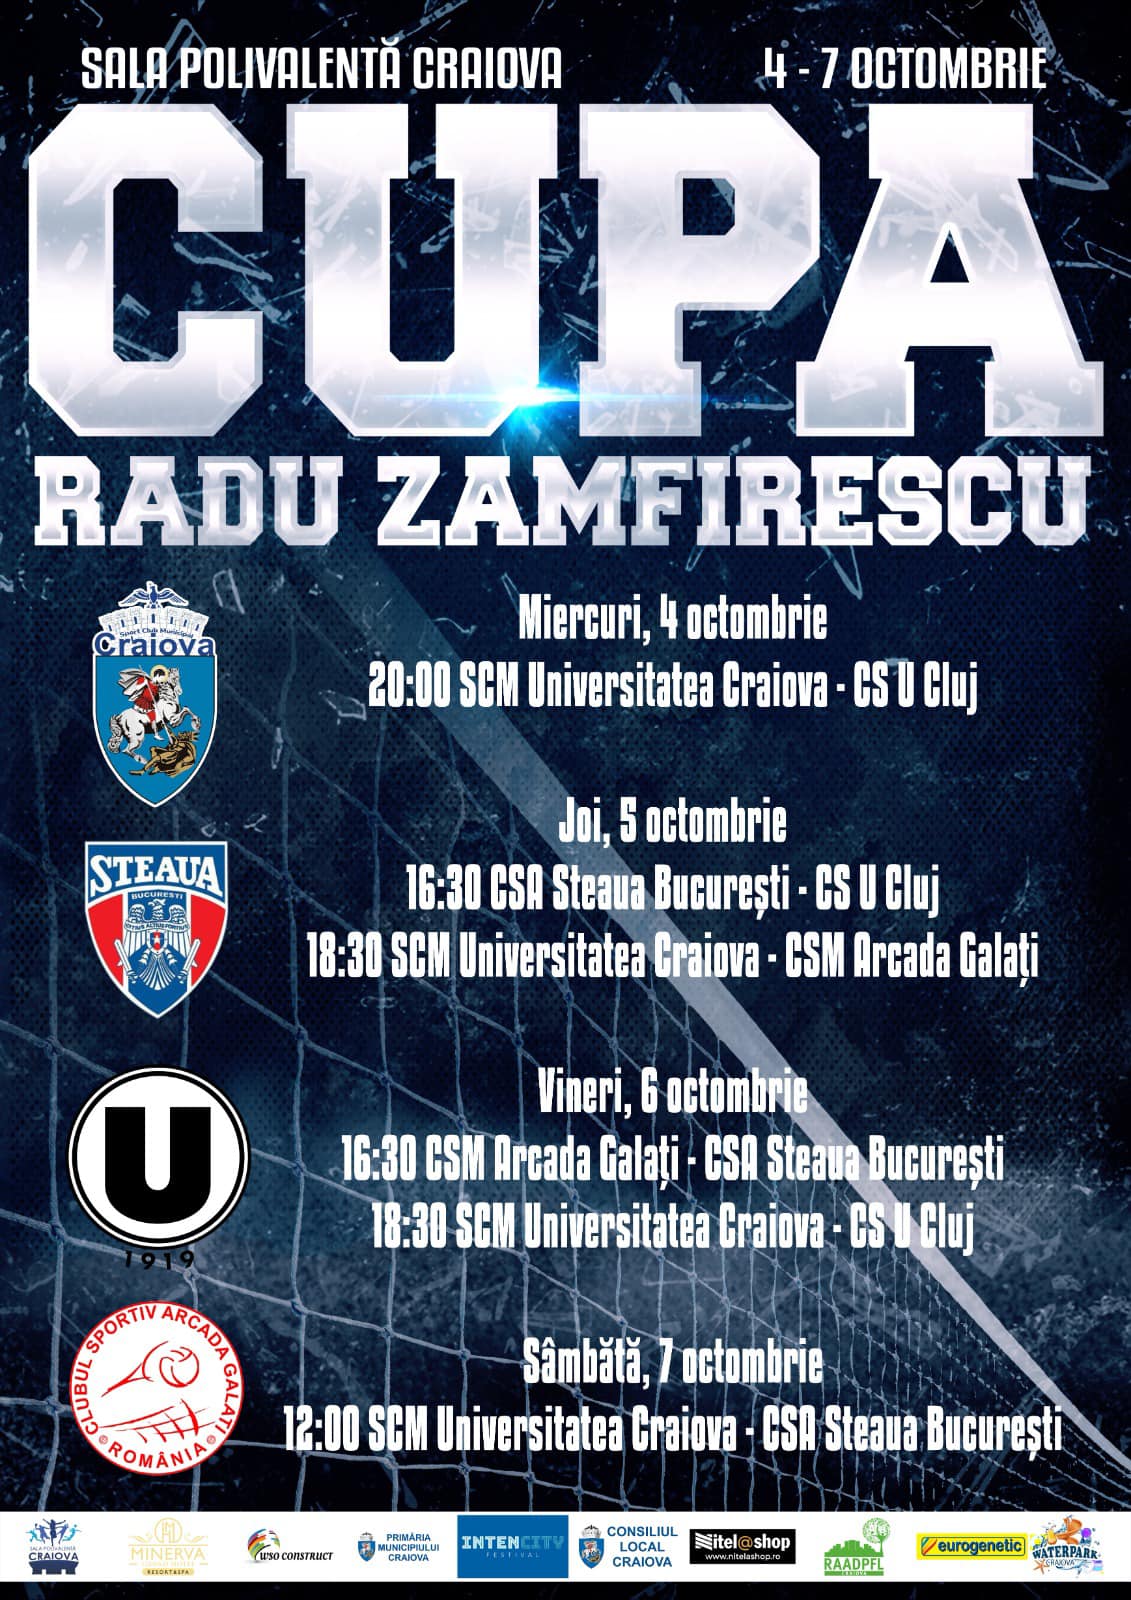  Cupa ”Radu Zamfirescu” la volei masculin, in perioada 04-07 octombrie